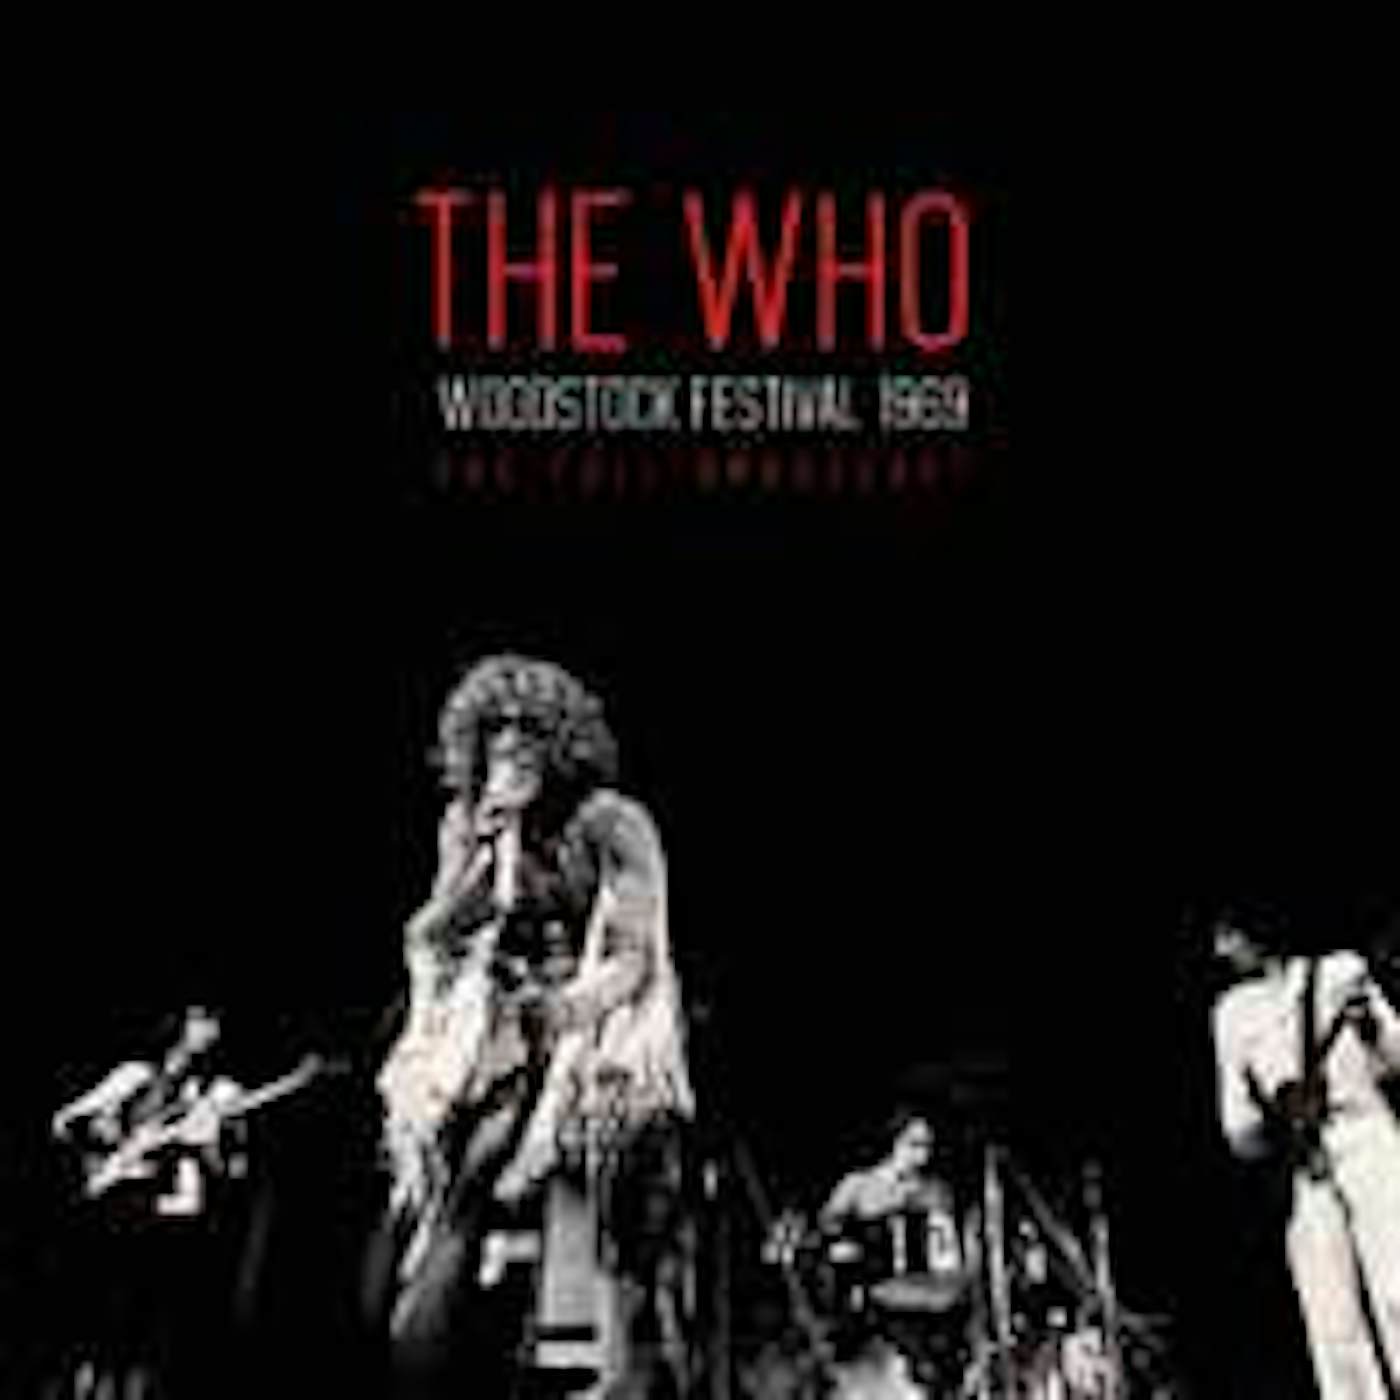 The Who LP - Woodstock Festival 1969 (Vinyl)